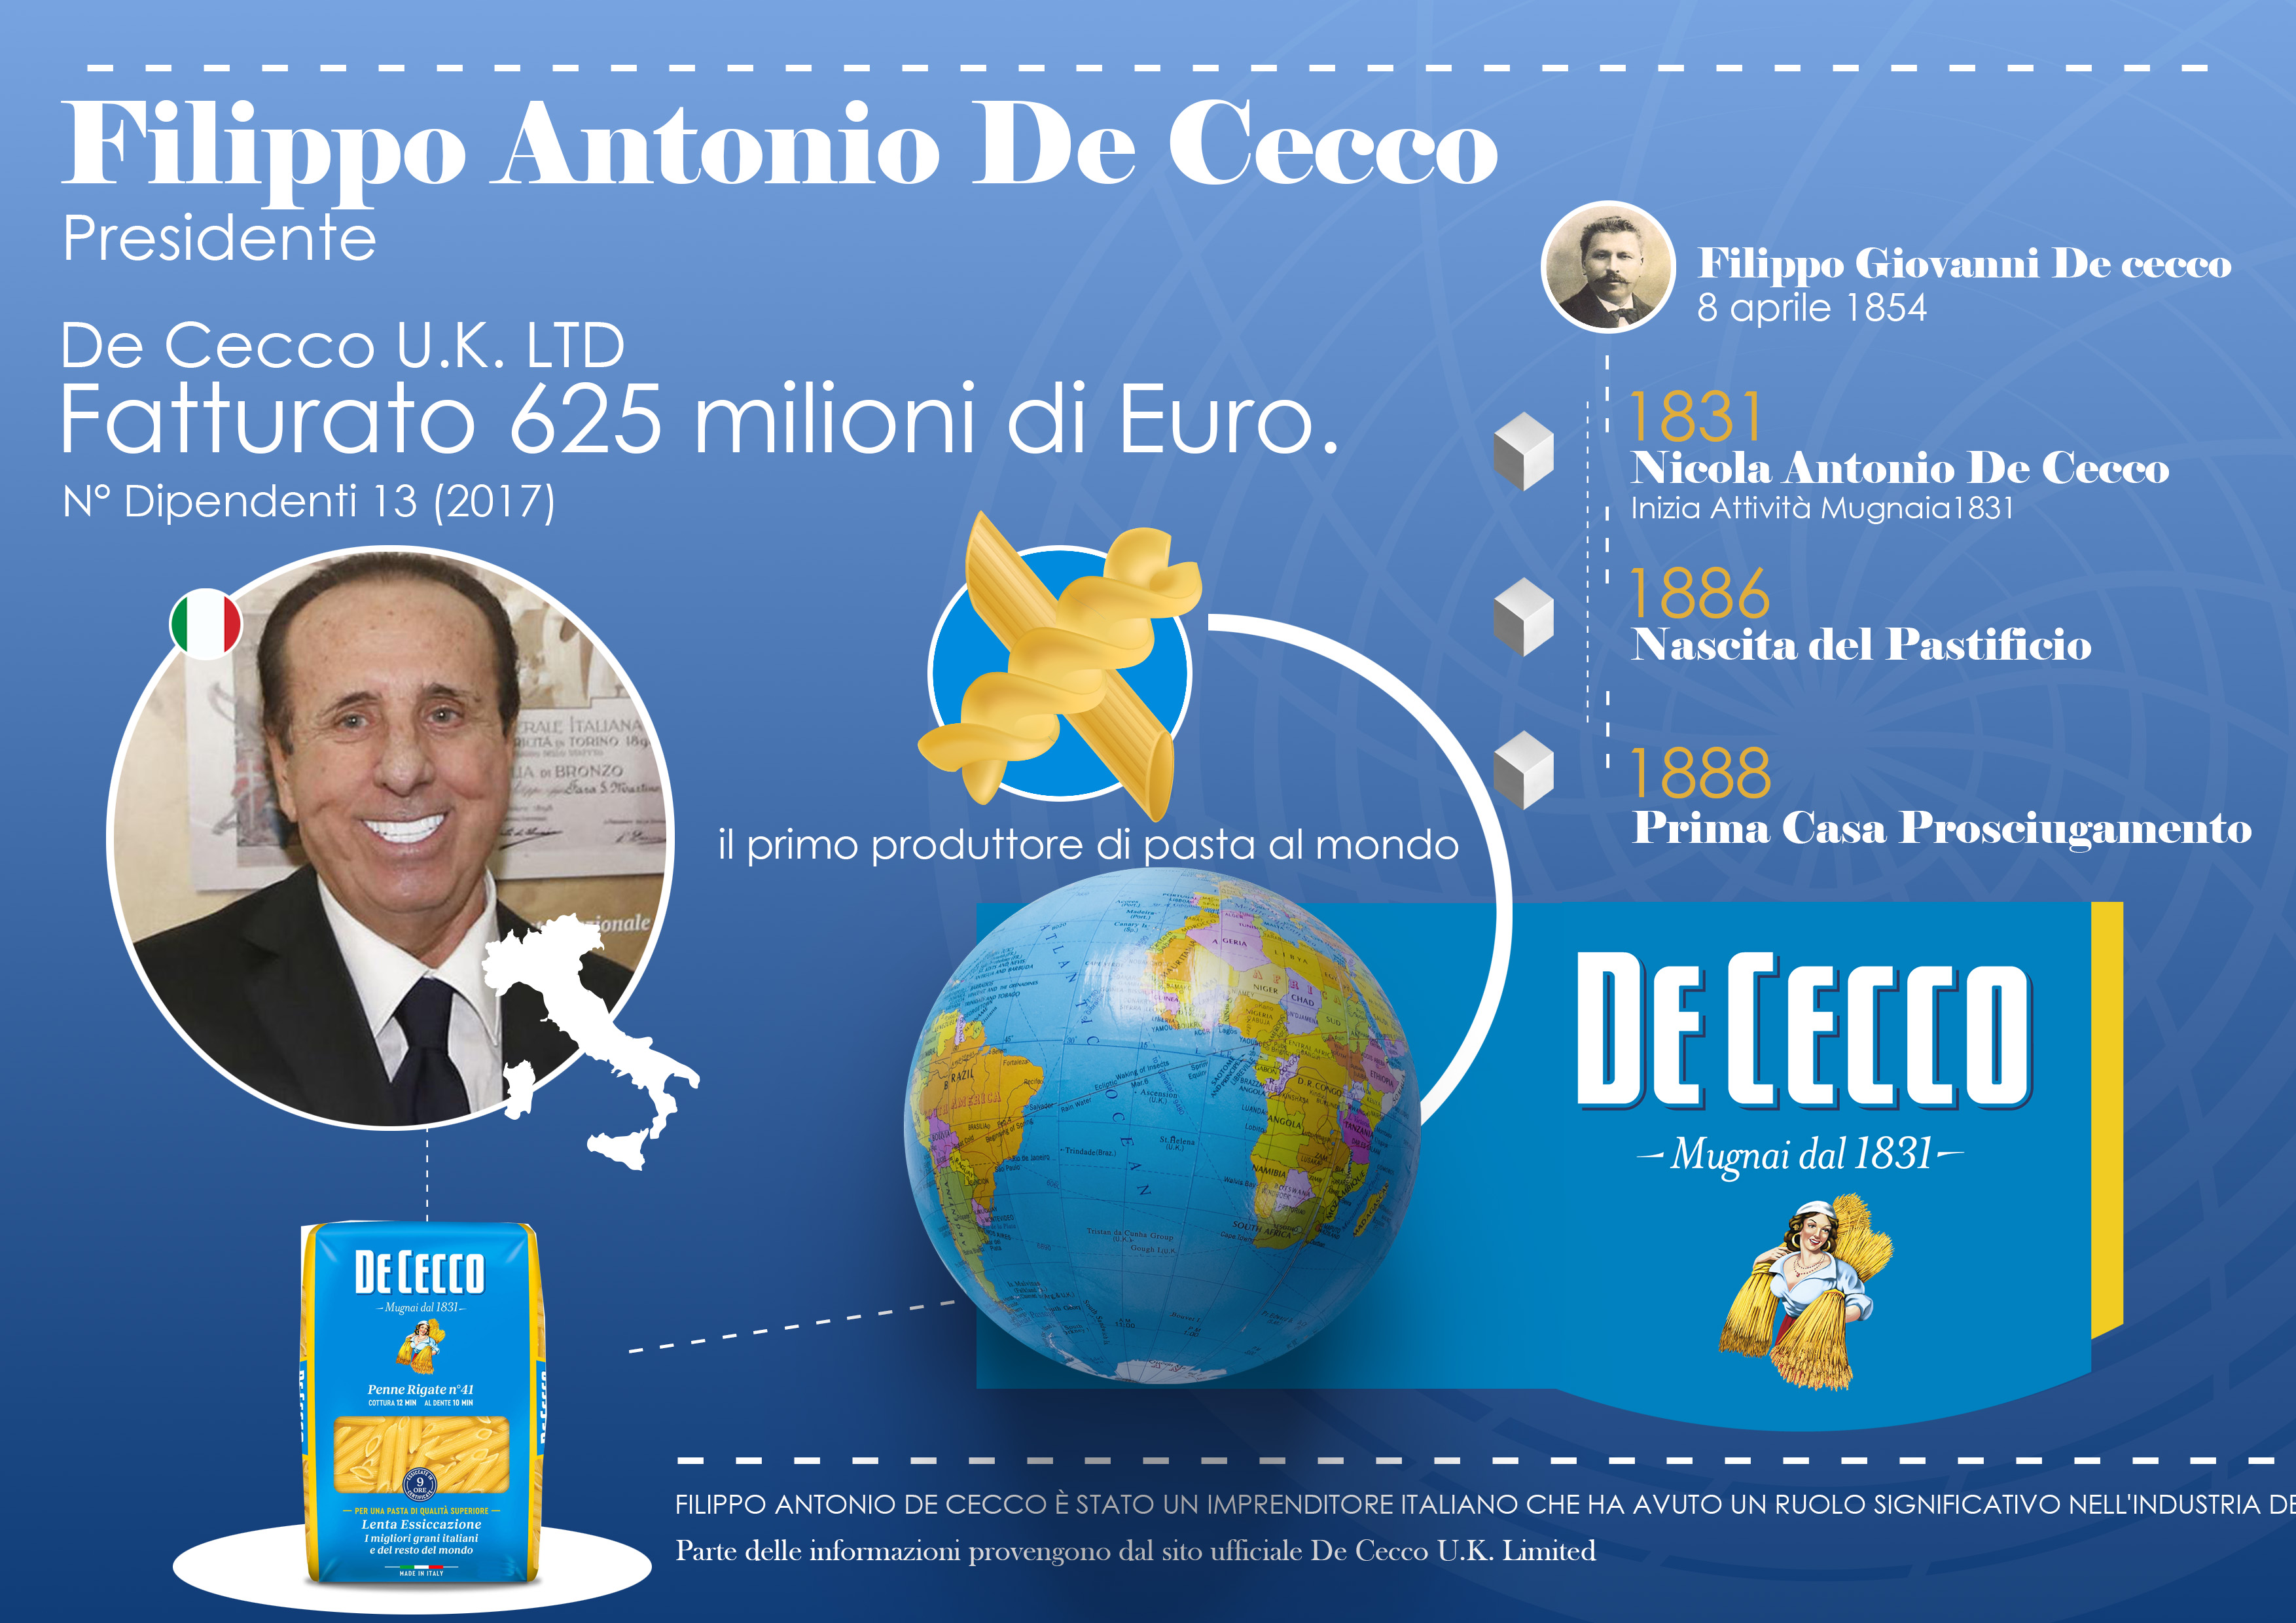 Analisi della Web Reputation del Presidente Filippo Antonio De Cecco azienda da 625 milioni di Euro